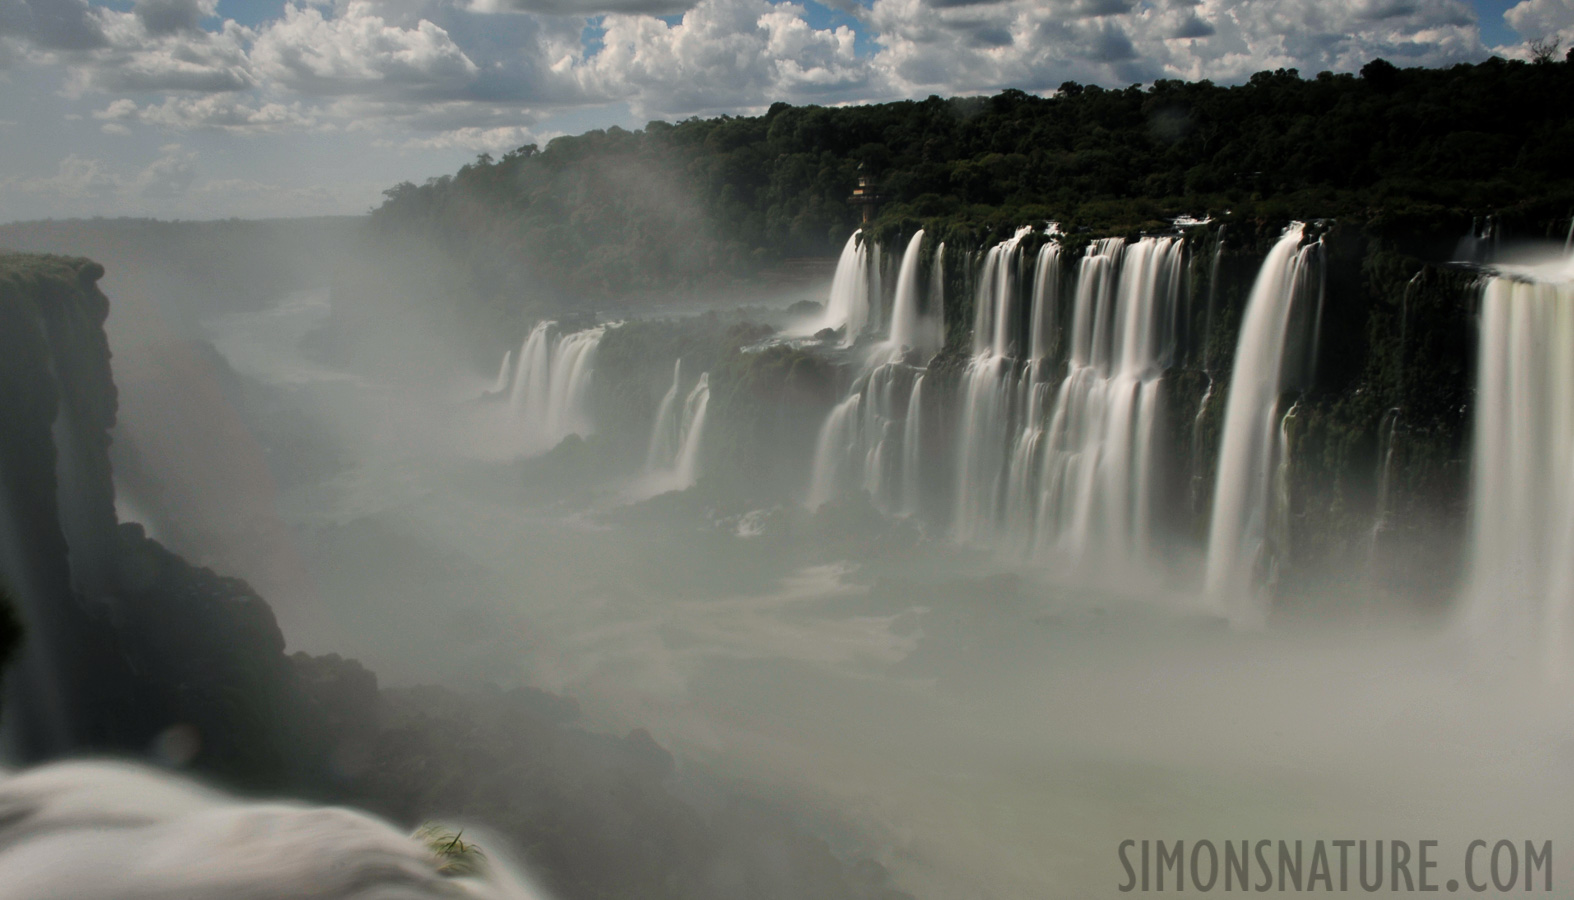 Cataratas del Iguazu [28 mm, 4.0 sec at f / 22, ISO 200]